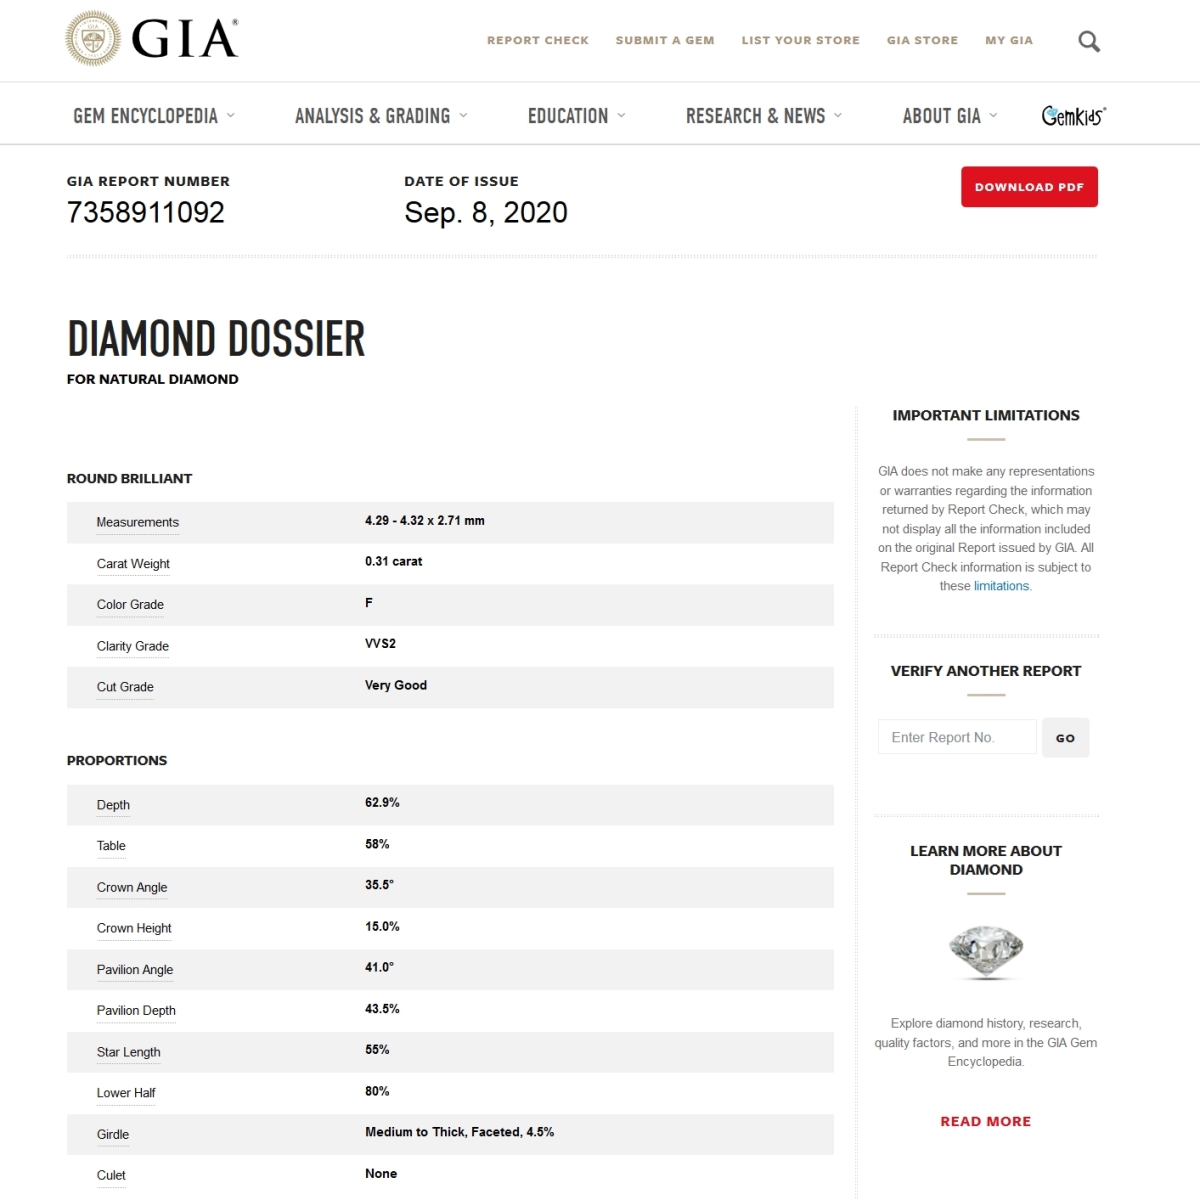 Diamante Naturale Certificato GIA Kt. 0,31 Colore F Purezza VVS2